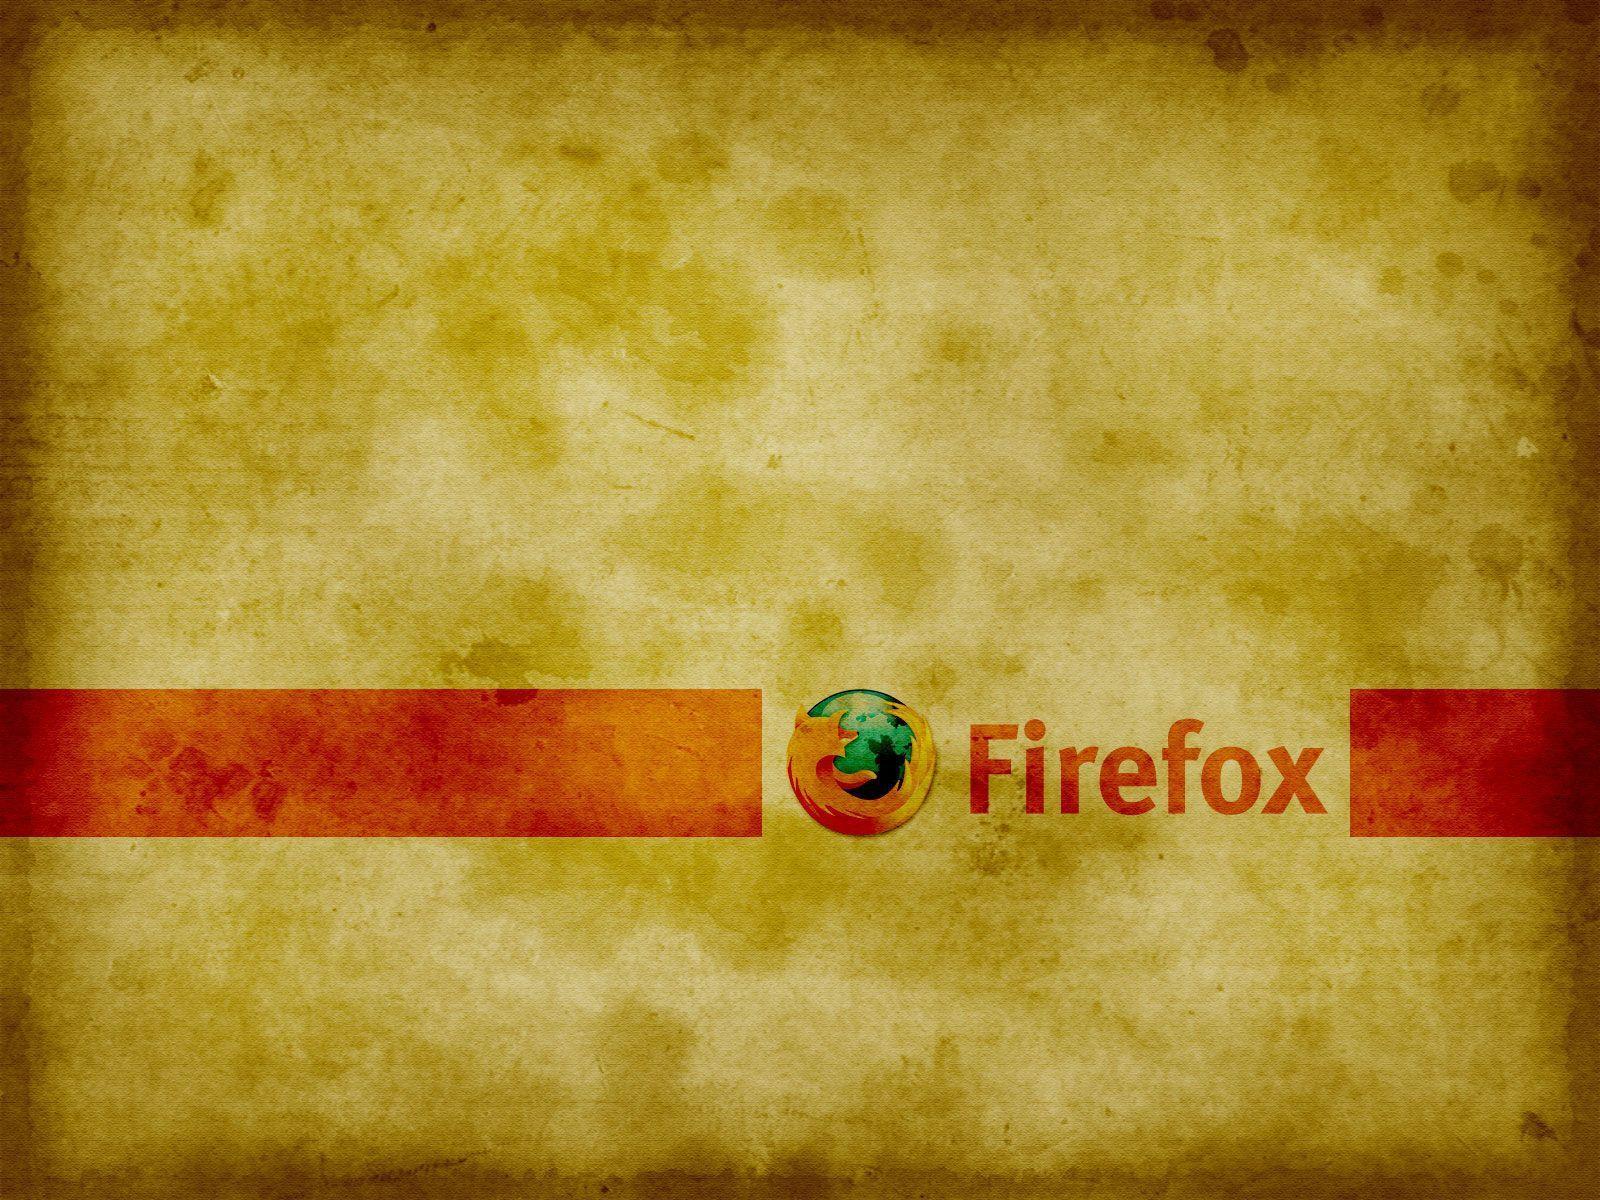 Firefox Computer Wallpaper, Desktop Background 1600x1200 Id: 80073